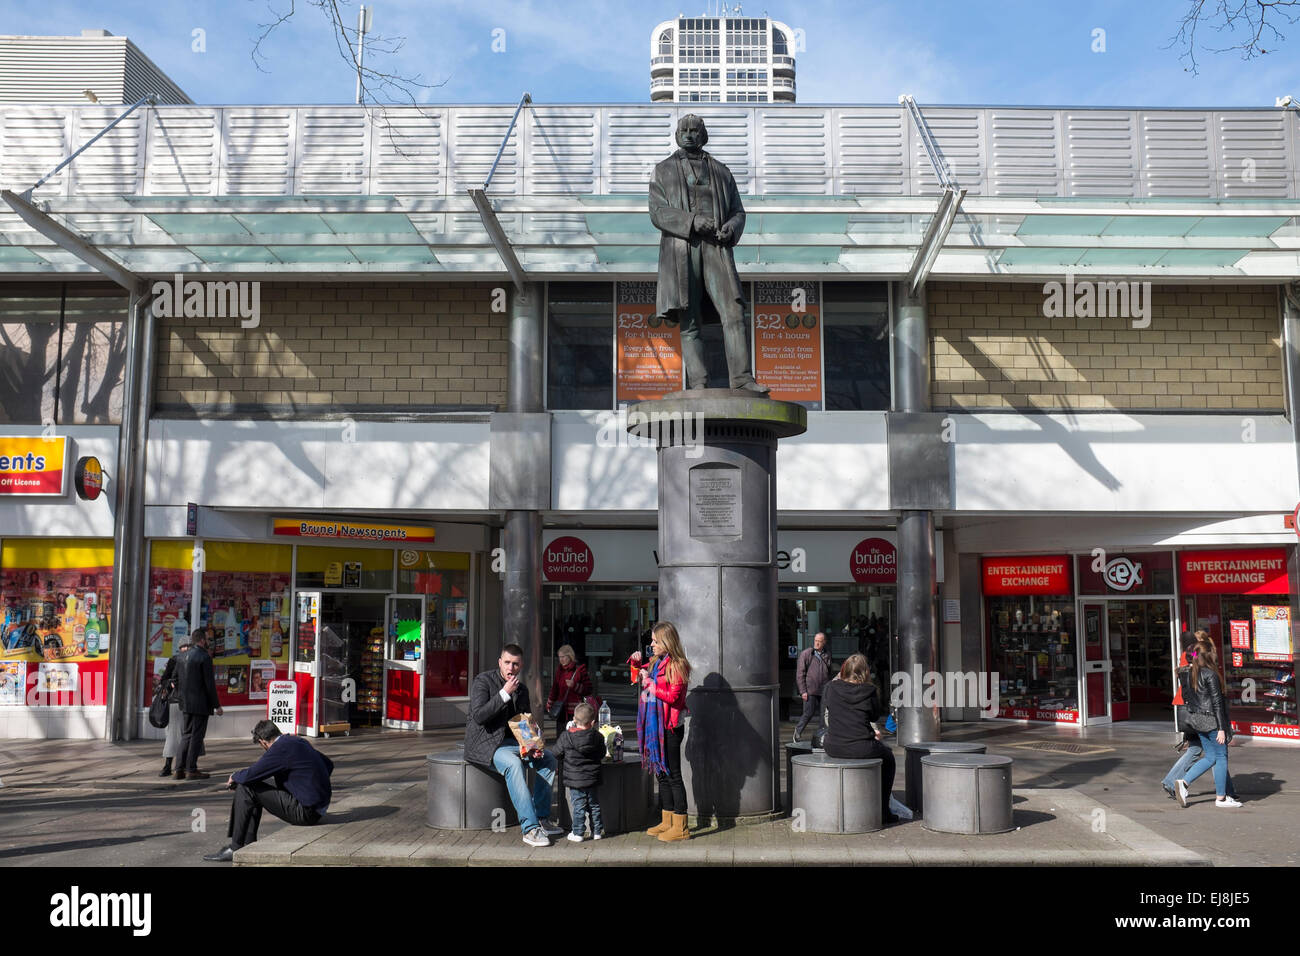 Statue of Brunel outside the Brunel Shopping Centre Swindon Stock Photo